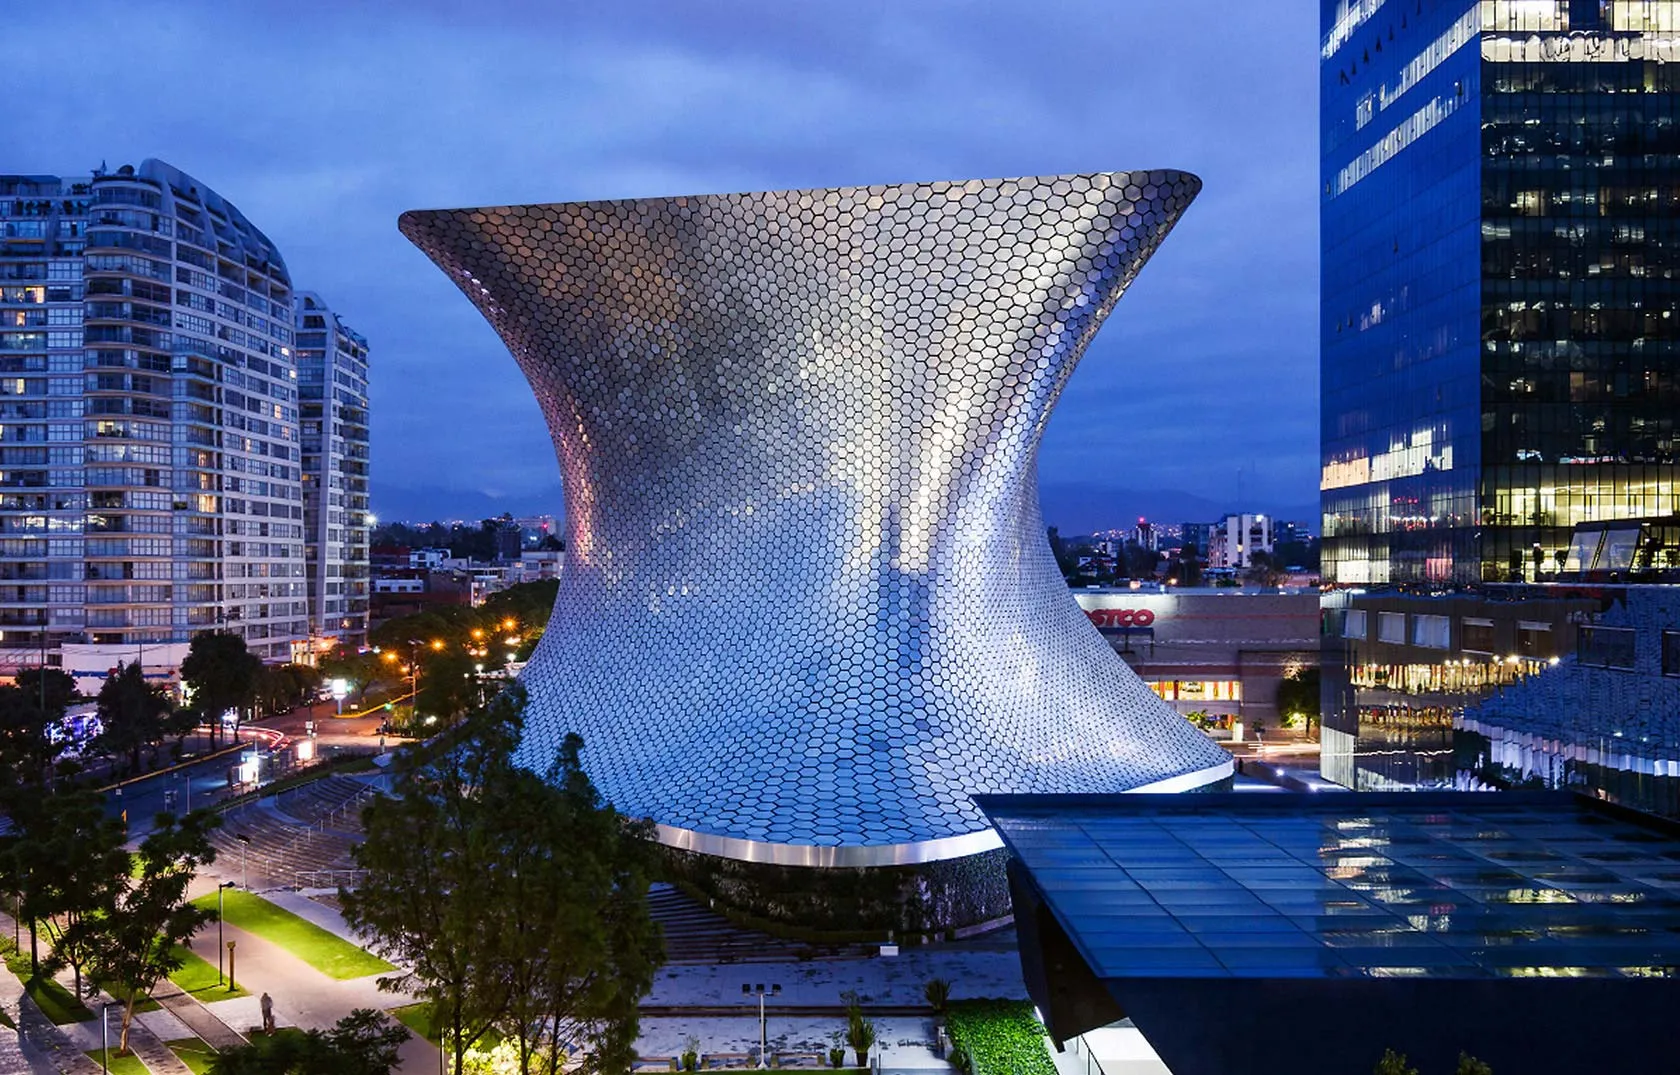 Nota sobre Visitando el Museo Soumaya en la Ciudad de México